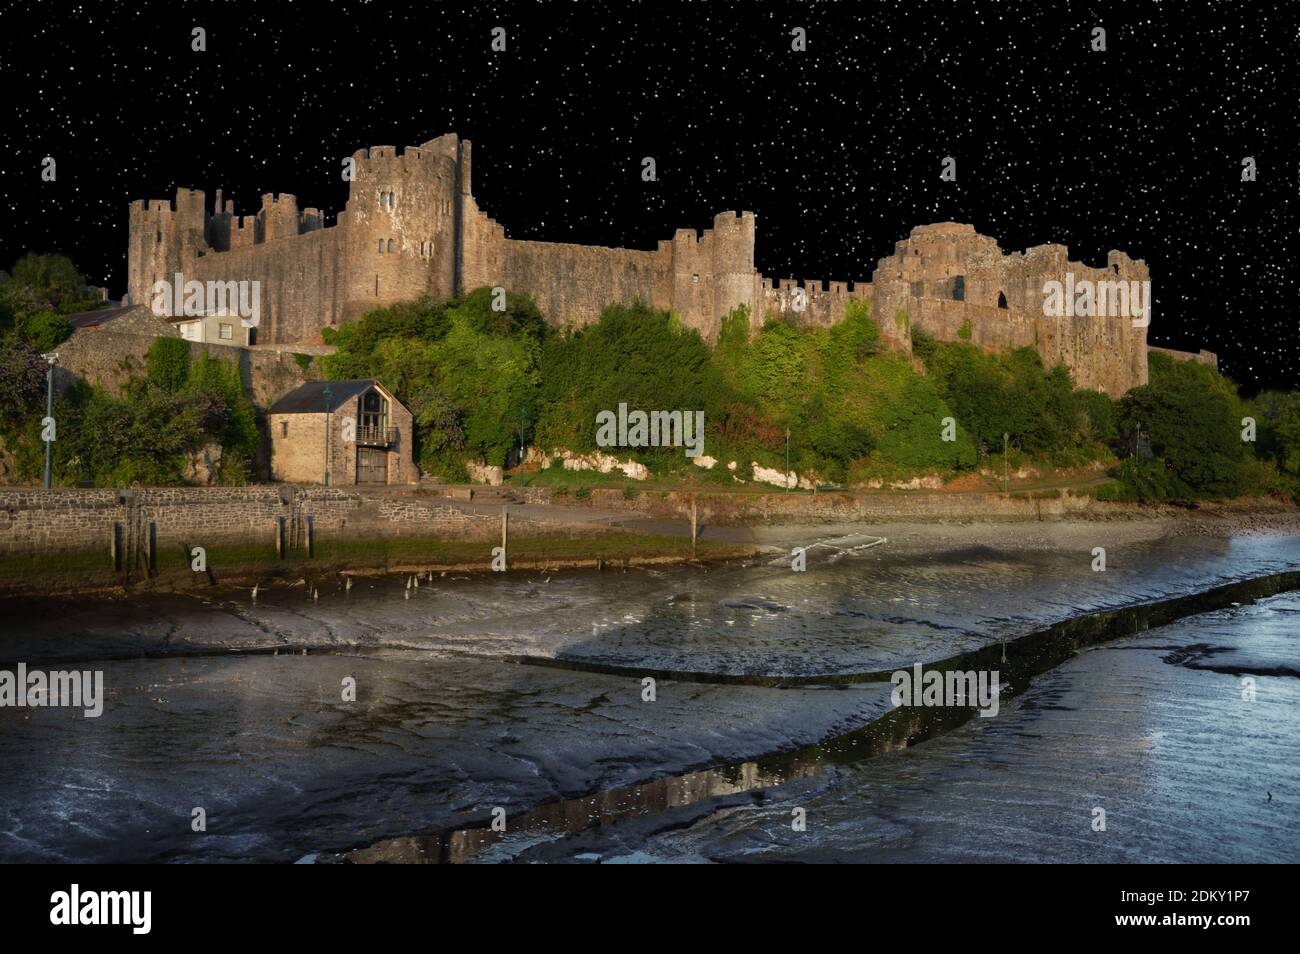 Le château de Pembroke est un château médiéval situé dans la ville de Pembroke, au pays de Galles. Il s'agit maintenant d'un bâtiment classé de classe I. Ici, le ciel nocturne a été ajouté. Banque D'Images